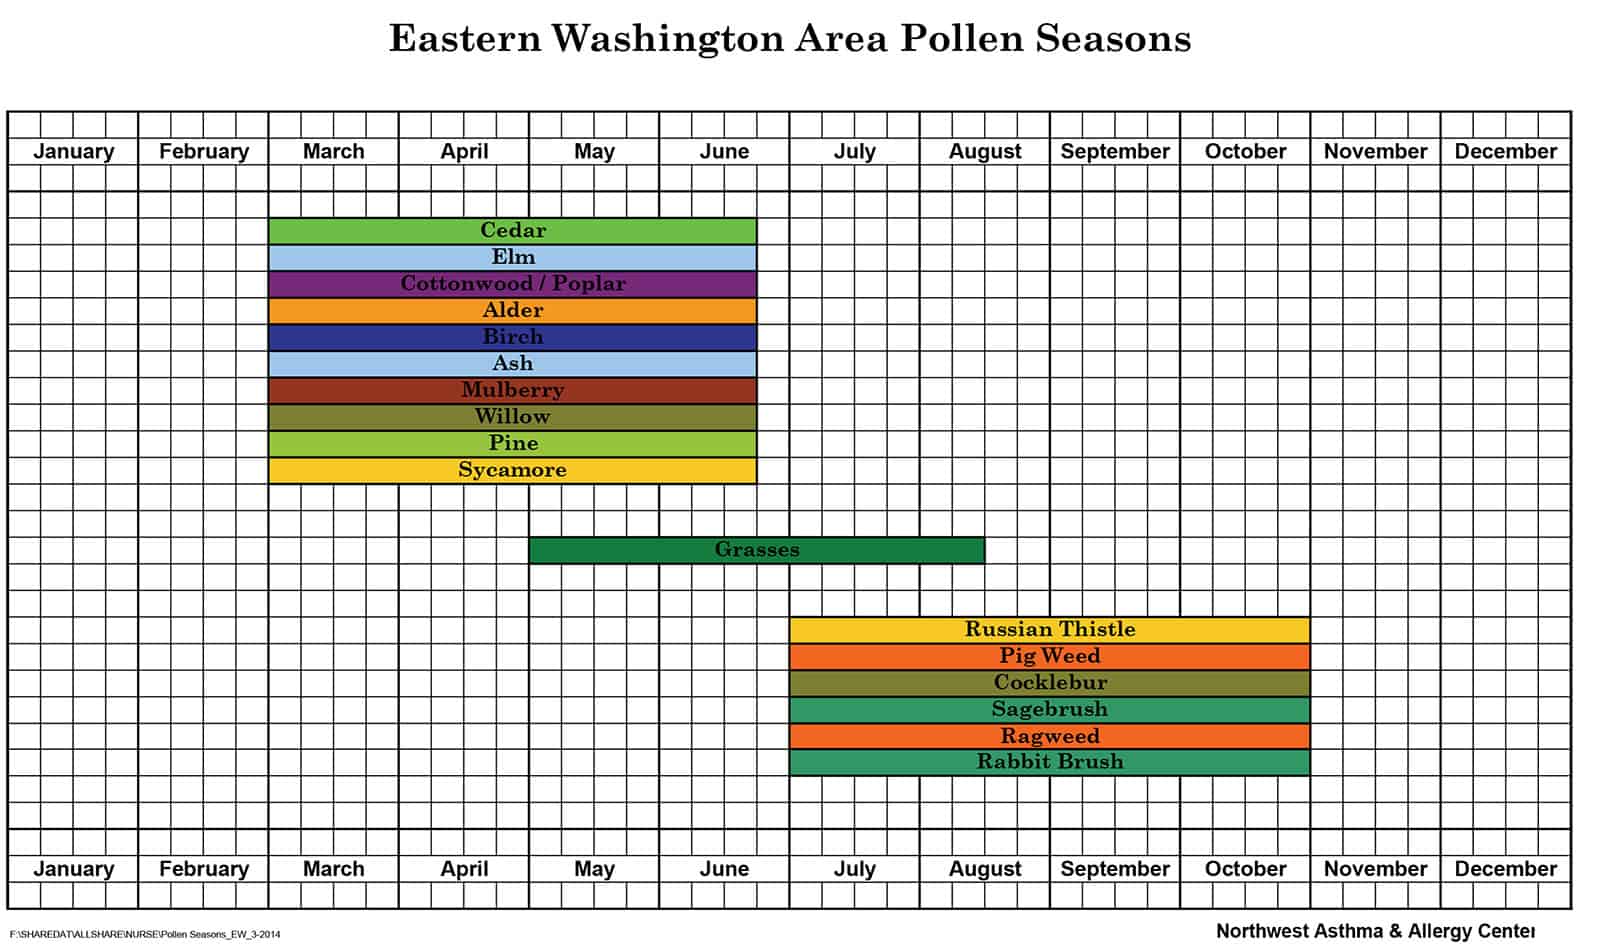 Pollen Count - Northwest Asthma & Allergy Center